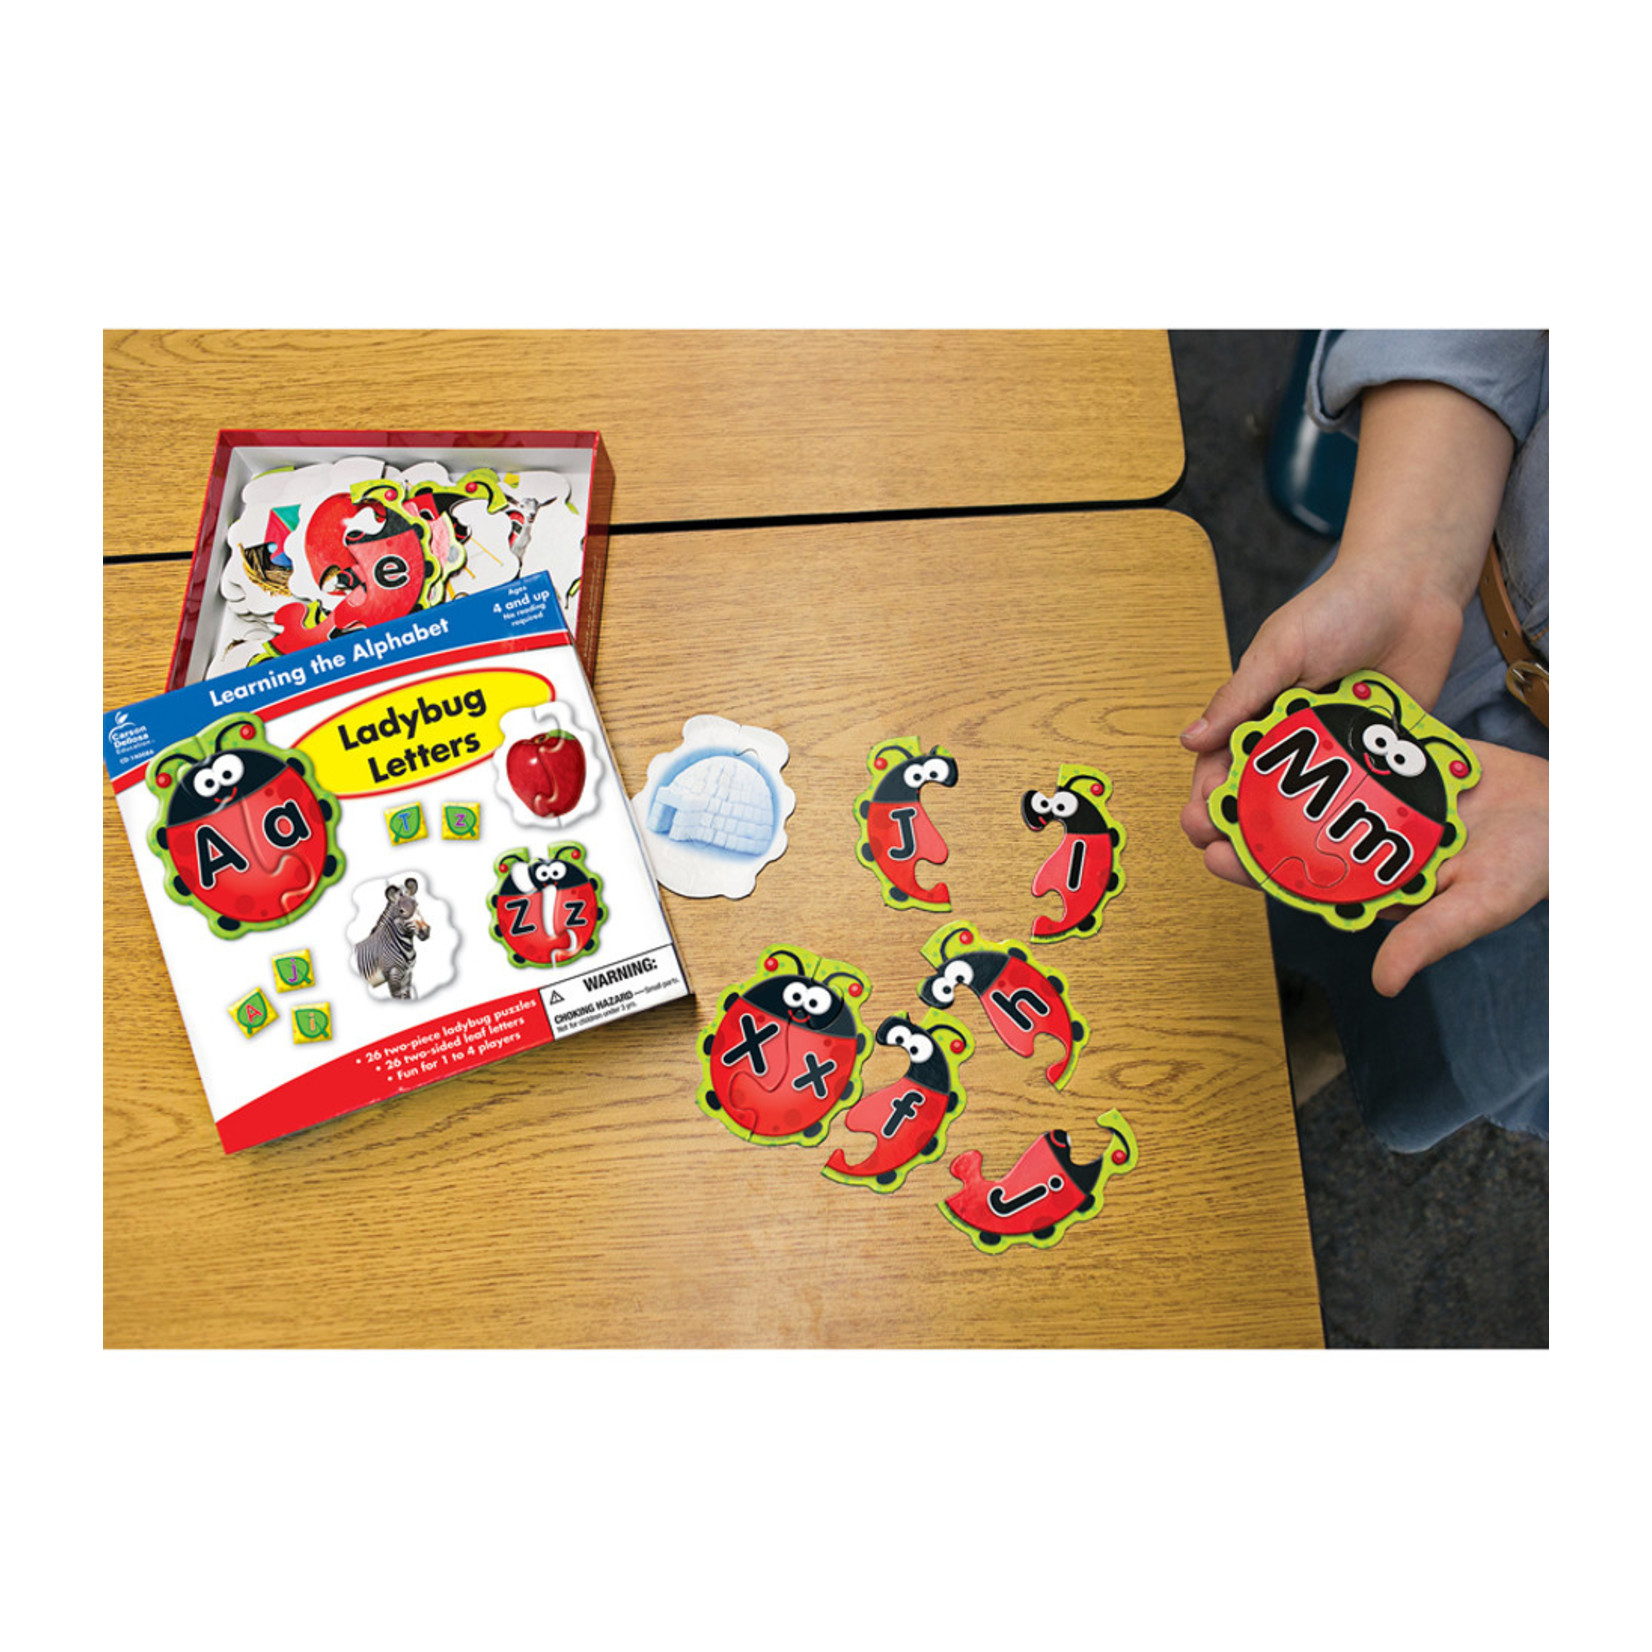 CARSON DELLOSA PUBLISHING CO Ladybug Letters Board Game Grade PK-1